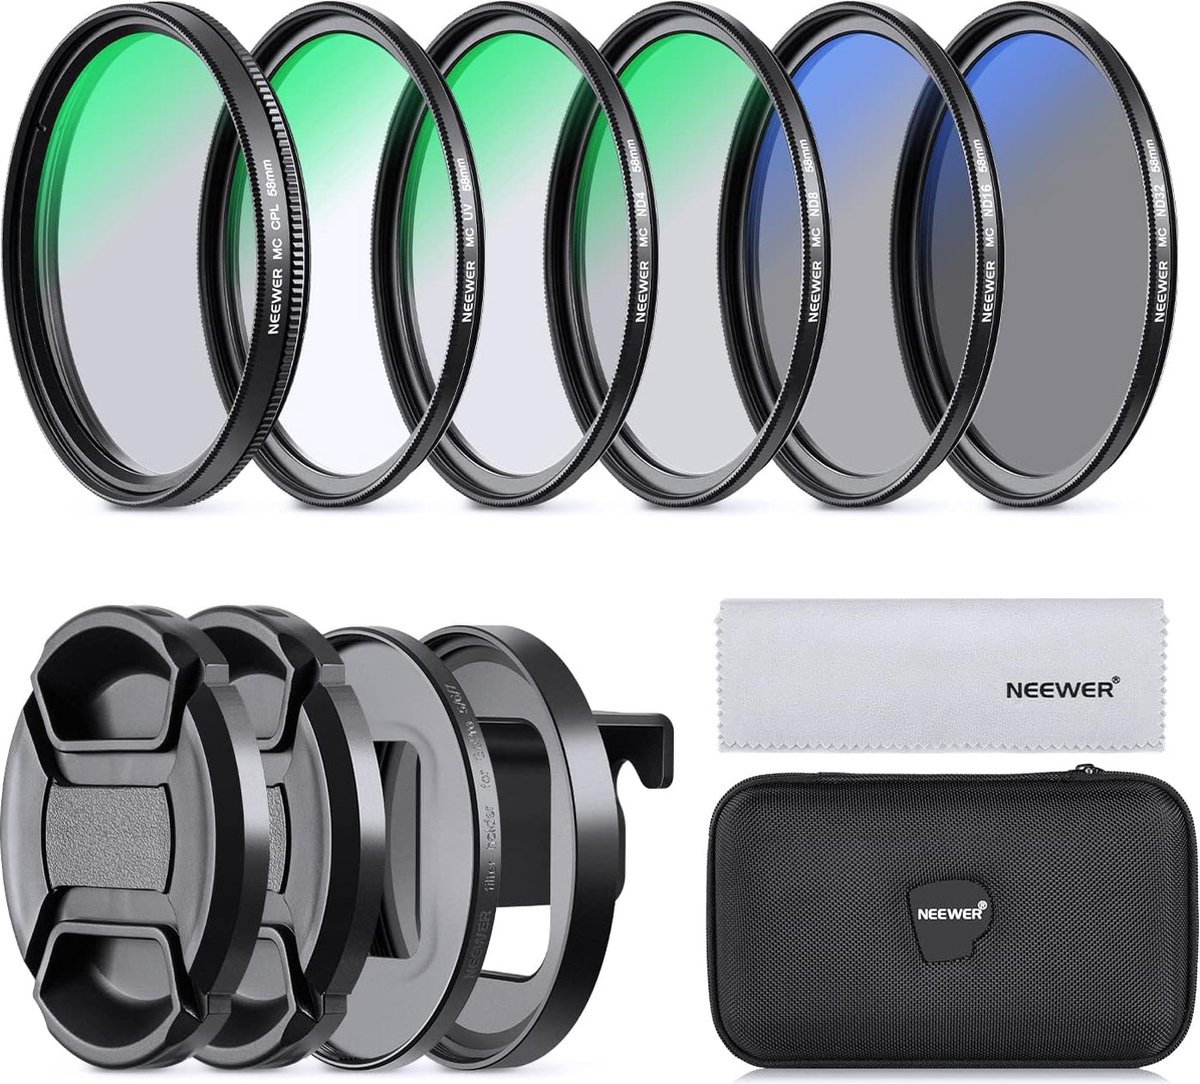 Neewer® - 58mm Lensfilter Set - Compatibel met GoPro Hero 8 7 6 5 - Neutral Density Pole Filter Set - 4 ND Filters (ND4/ND8/ND16/ND32), CPL Filter - UV Filter